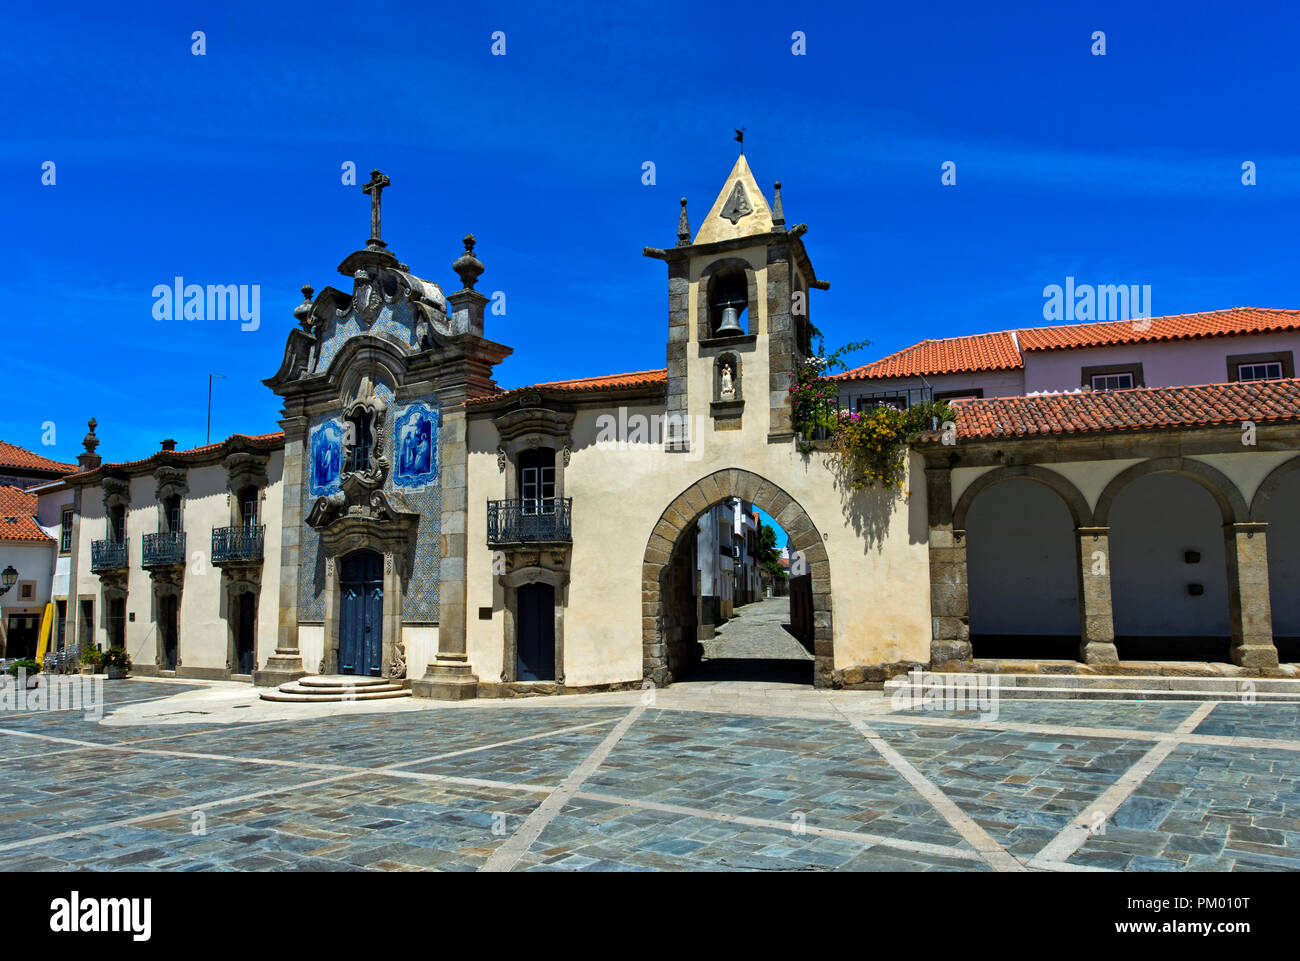 Chapel of Mercy, Capela da Misericórdia, and city gate, Sao Joao da Pesqueira, Portugal Stock Photo